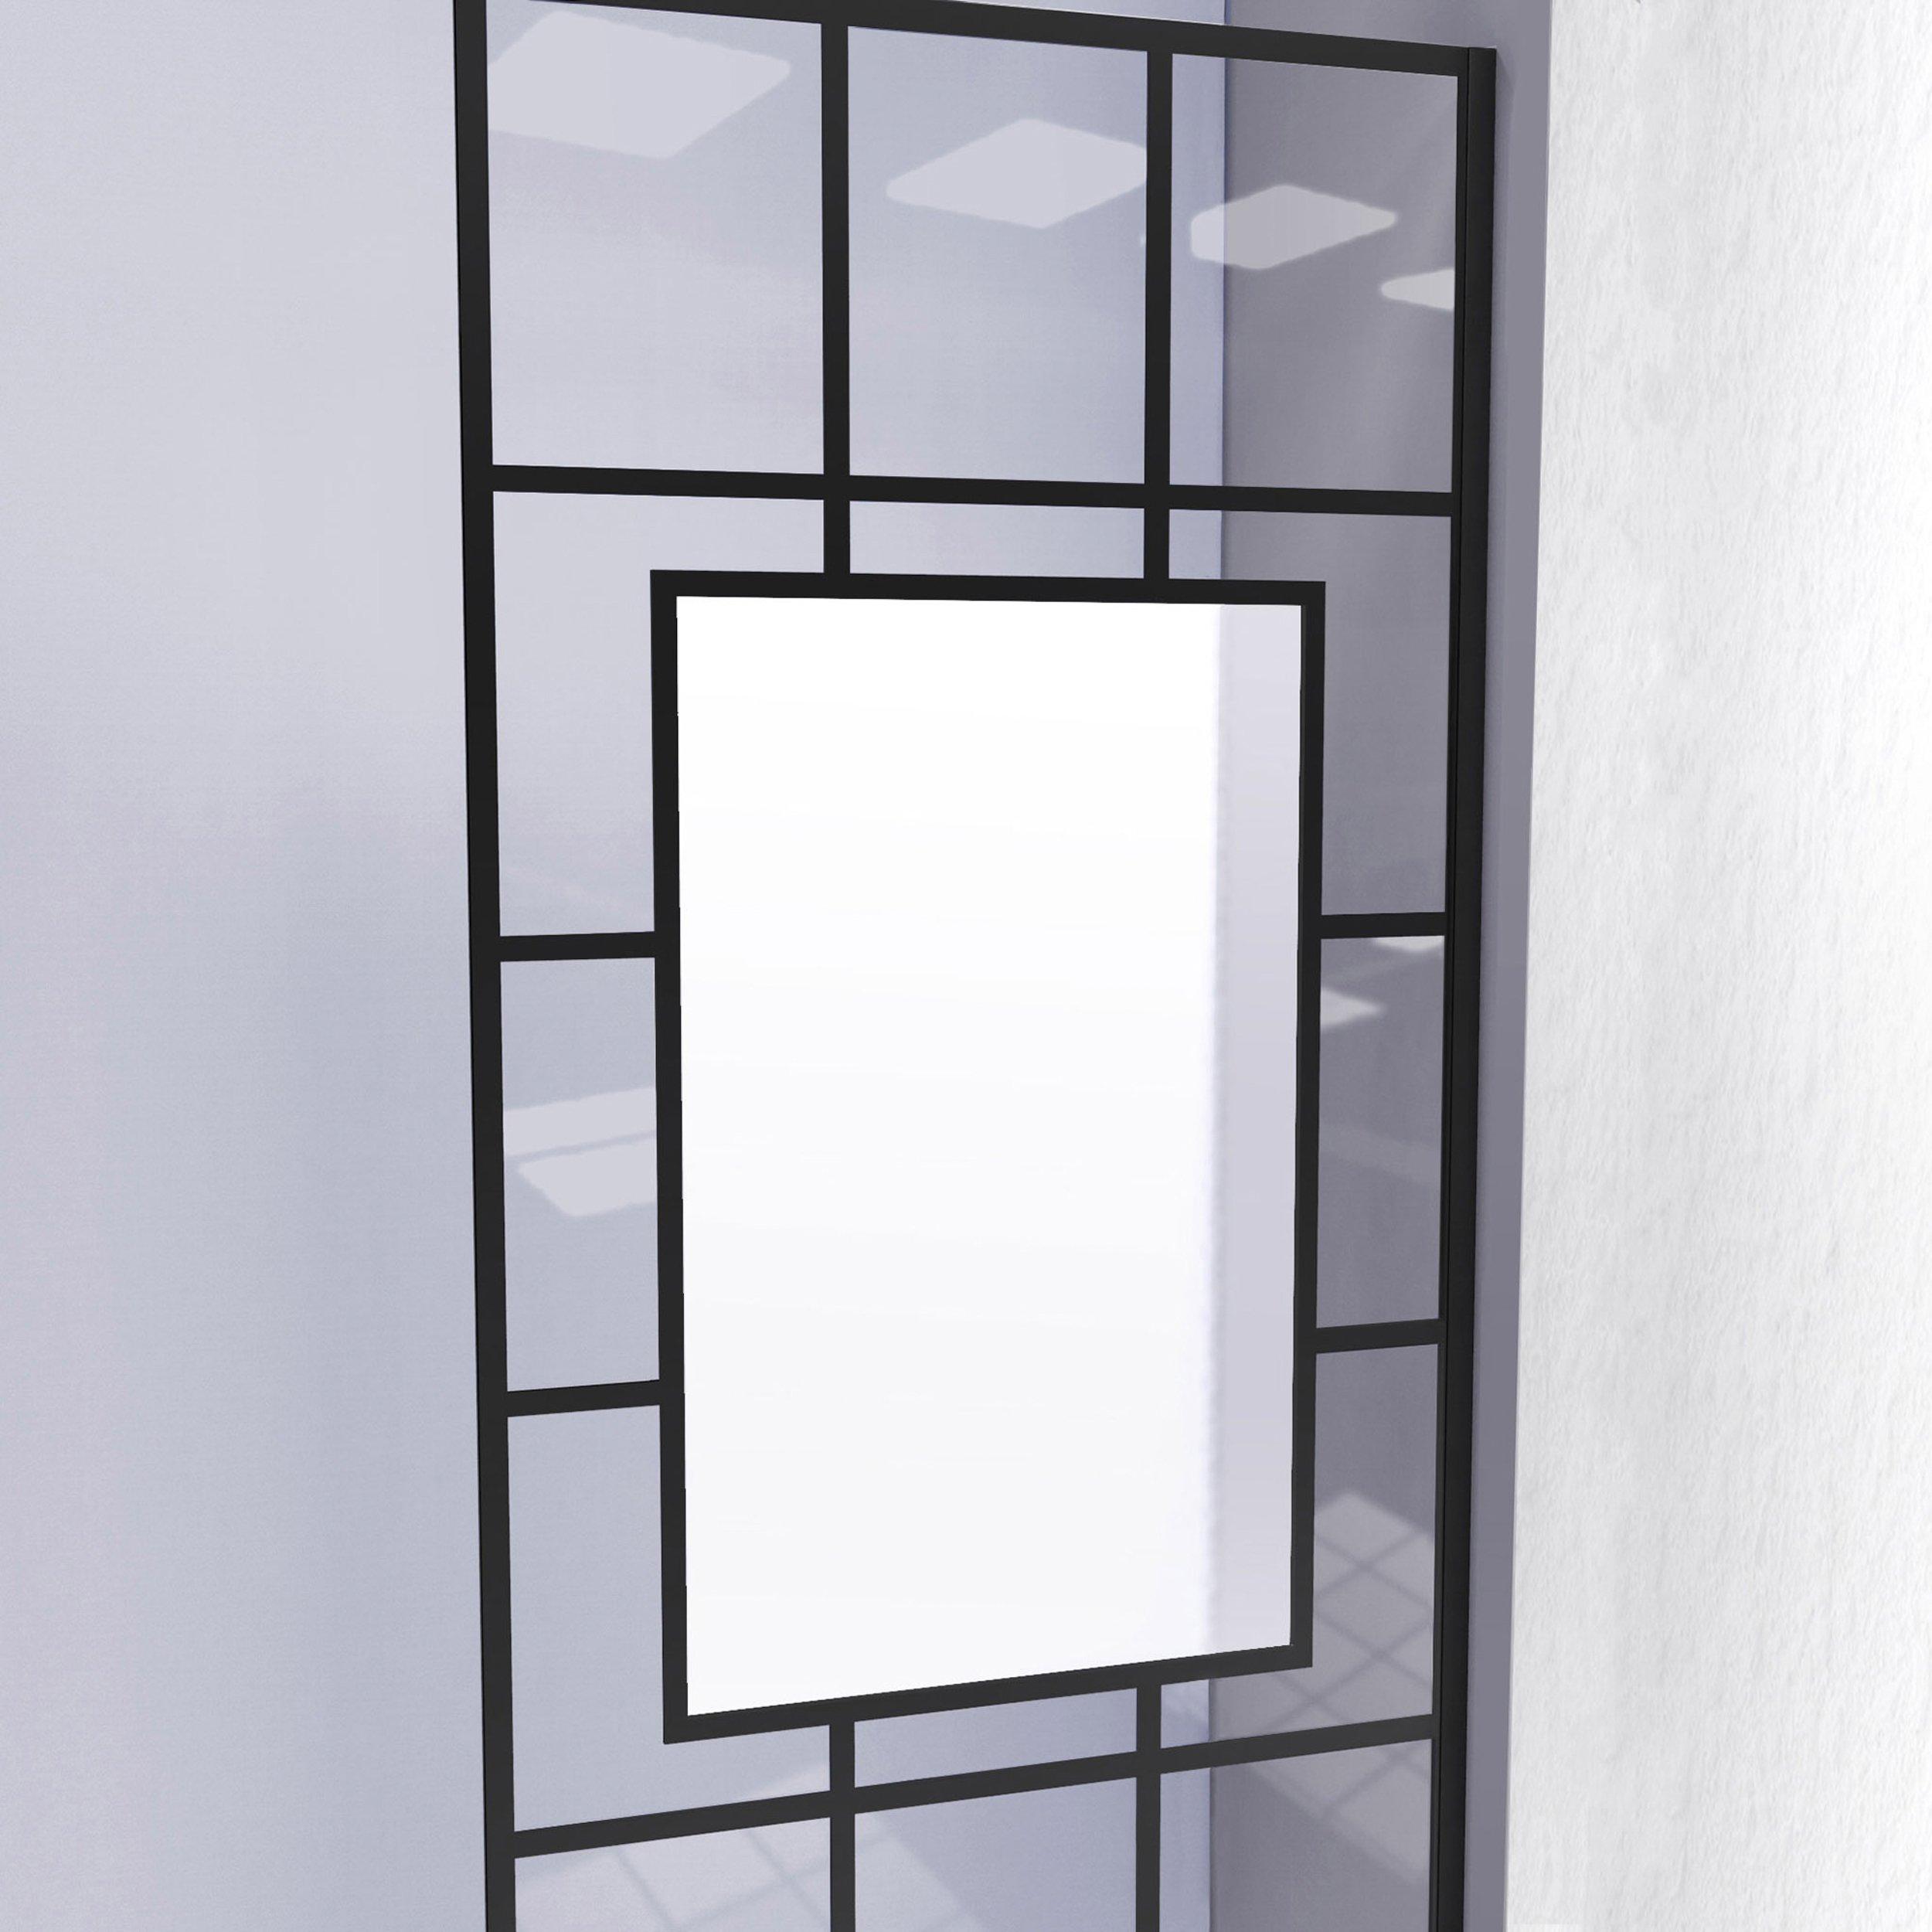 French Linea Avignon Satin Black Single Panel Frameless Shower Screen